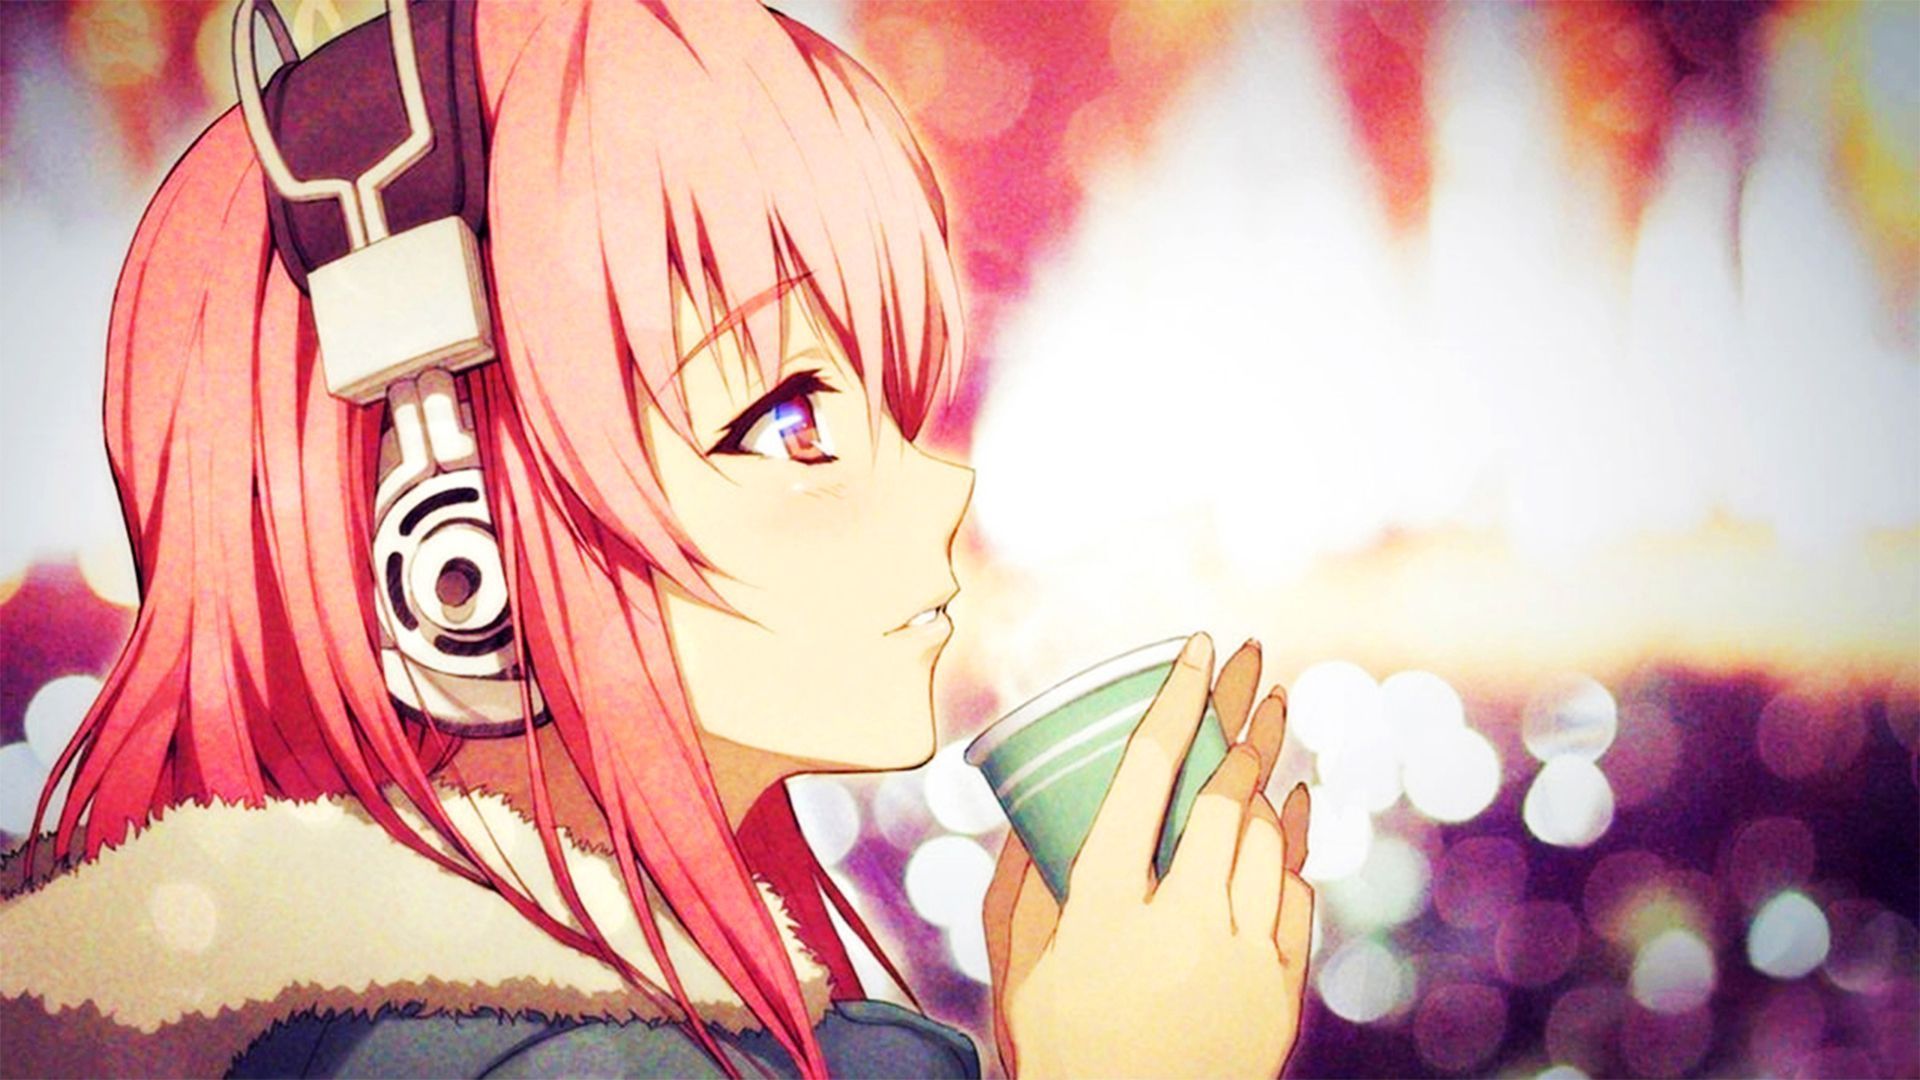 Anime_Girl_With_Headphones_Drinking_ - PixelMusicPixelMusic